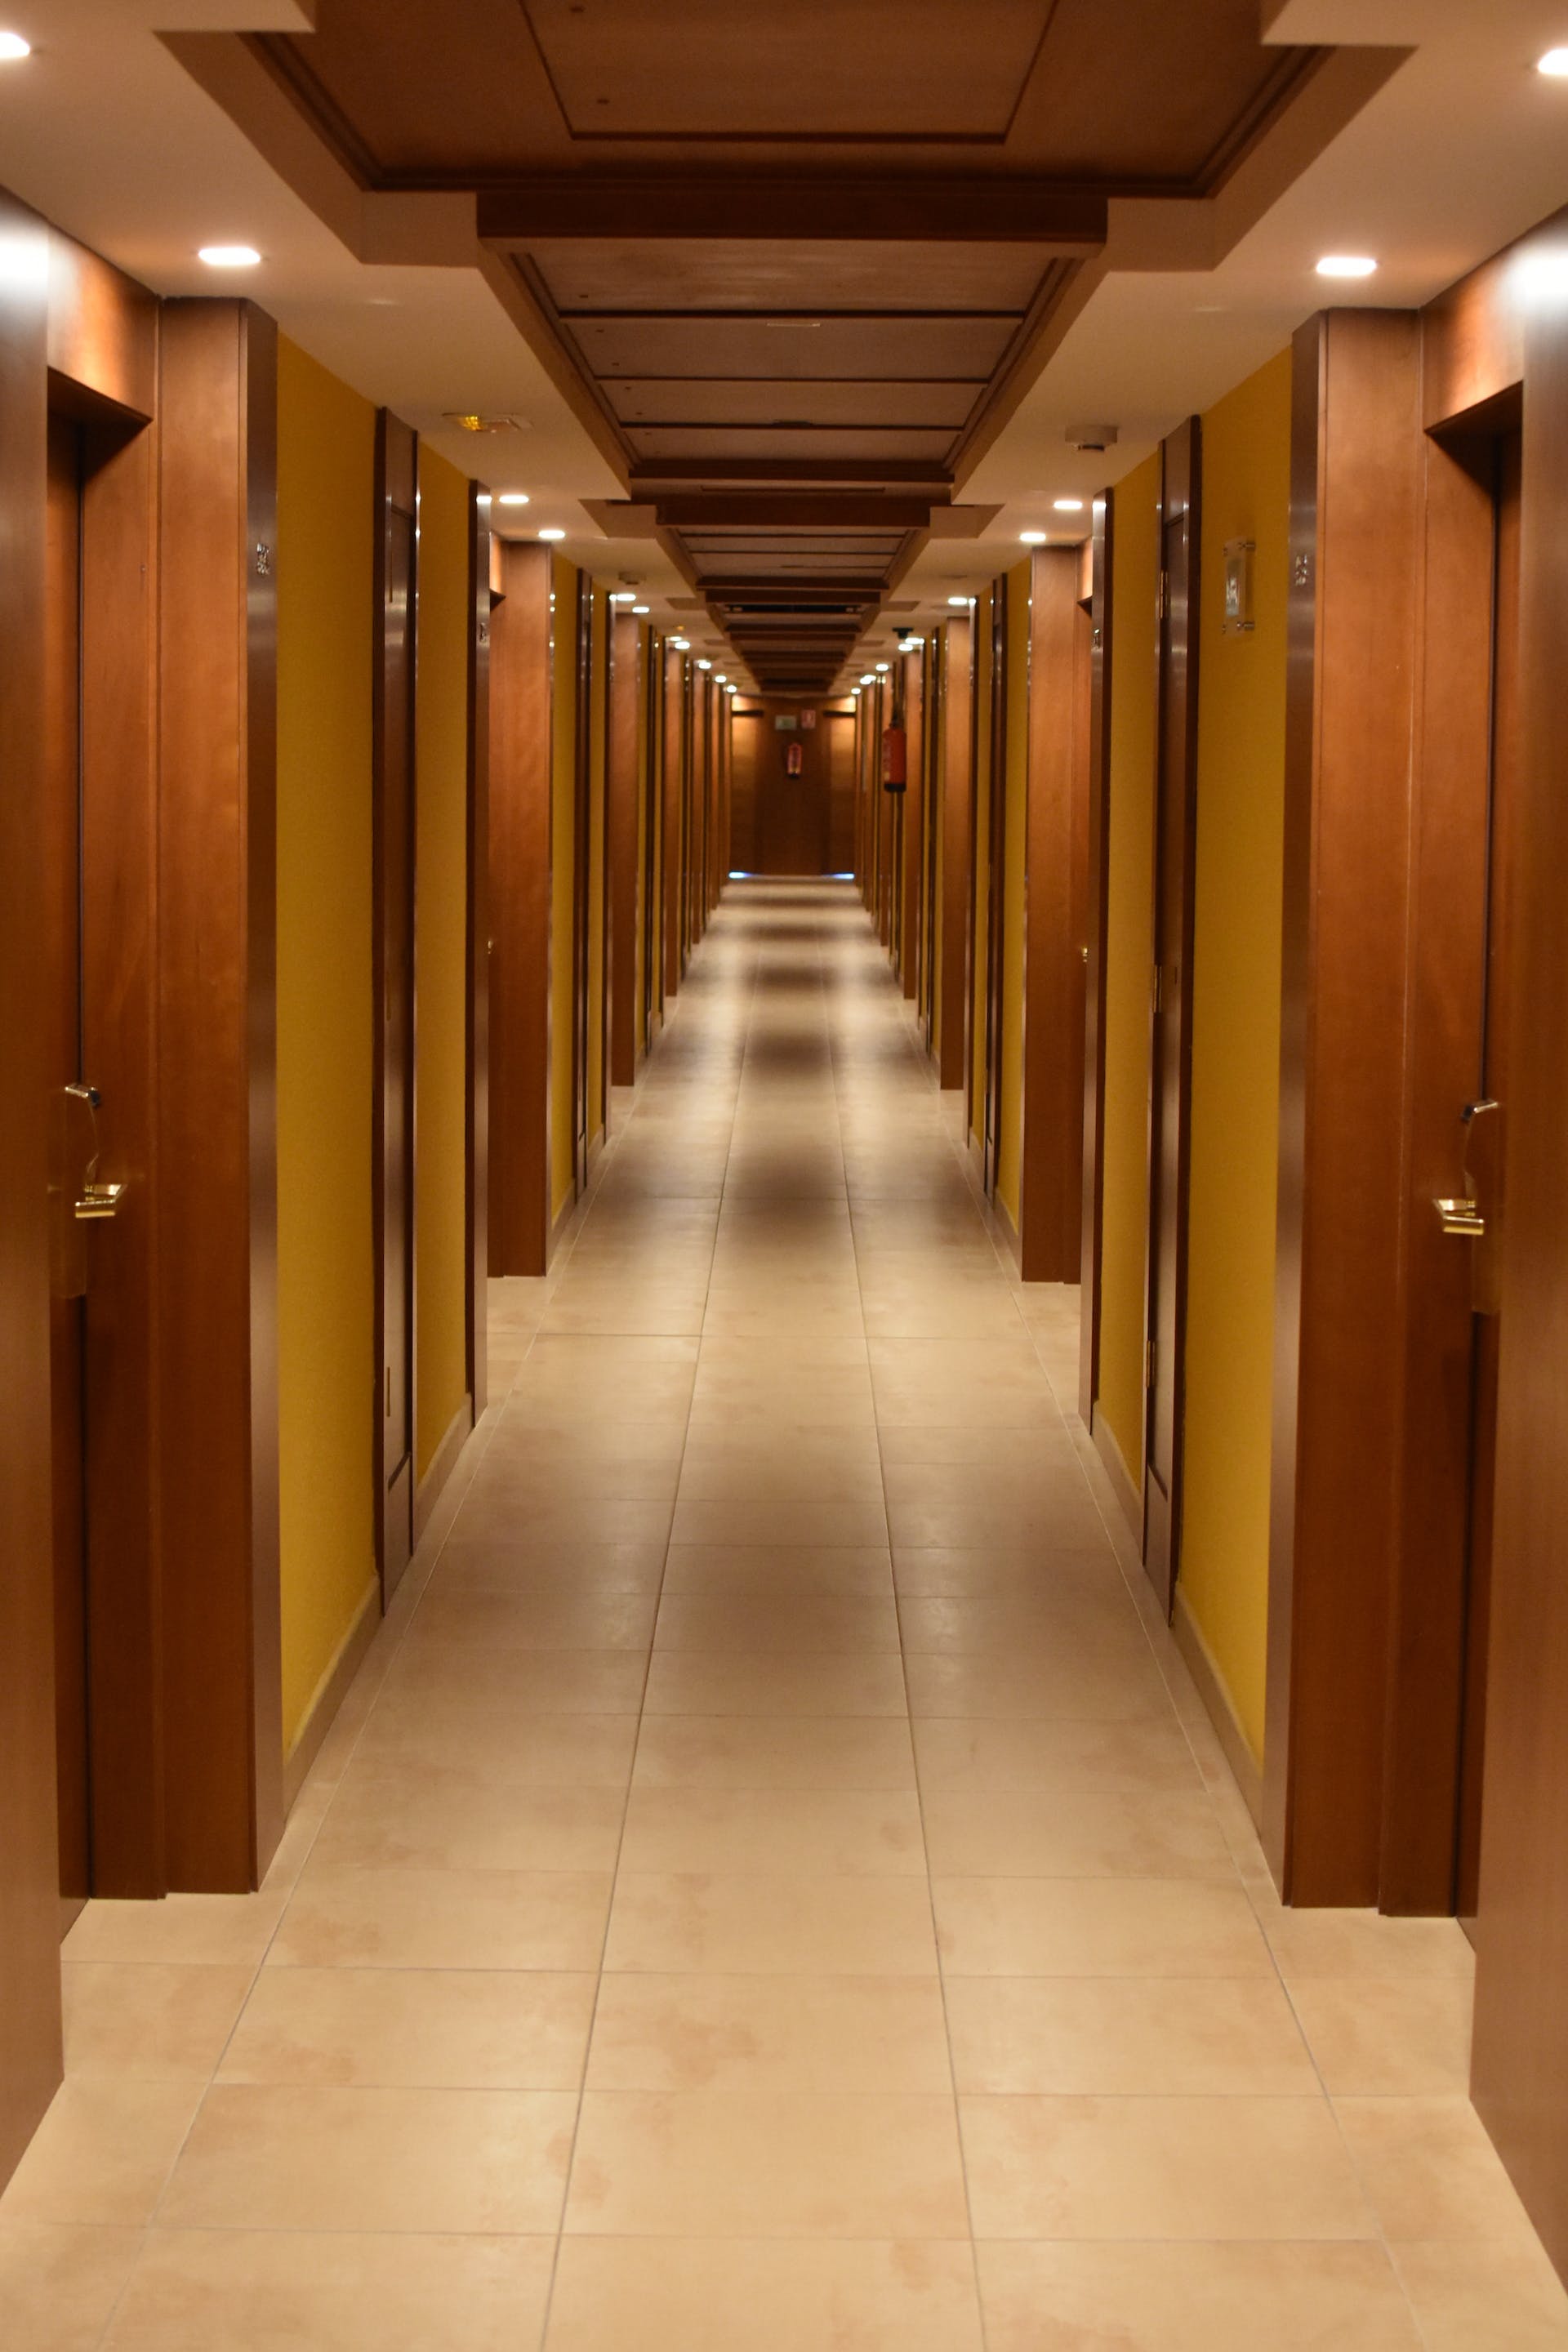 A hallway | Source: Pexels